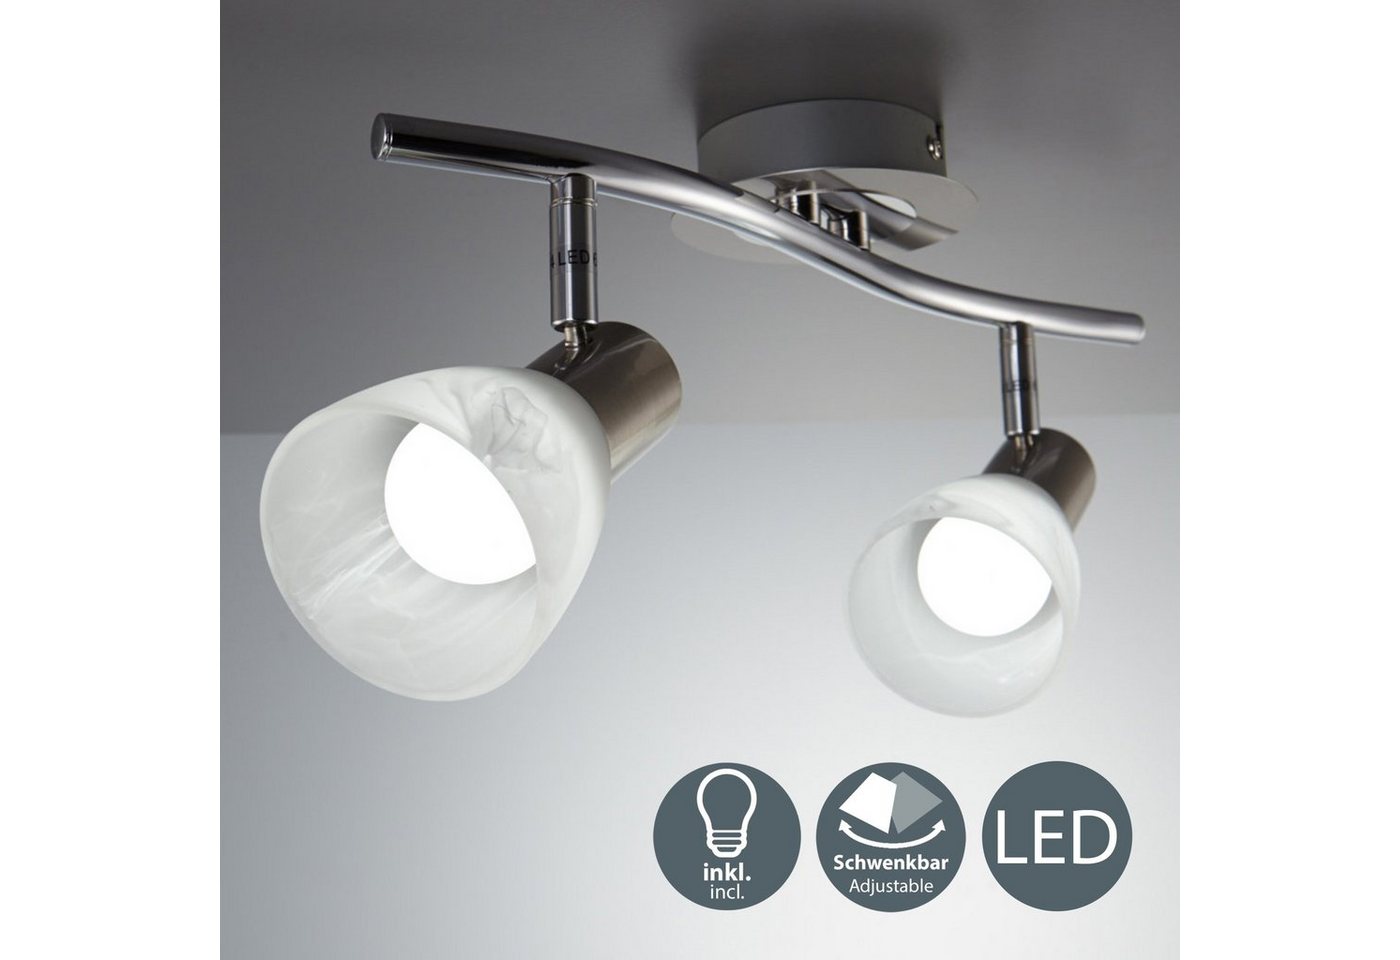 B.K.Licht LED Deckenstrahler, LED Deckenlampe Wohnzimmer schwenkbar E14 Metall Glas Spot Leuchte inkl. 5W 470lm-HomeTrends